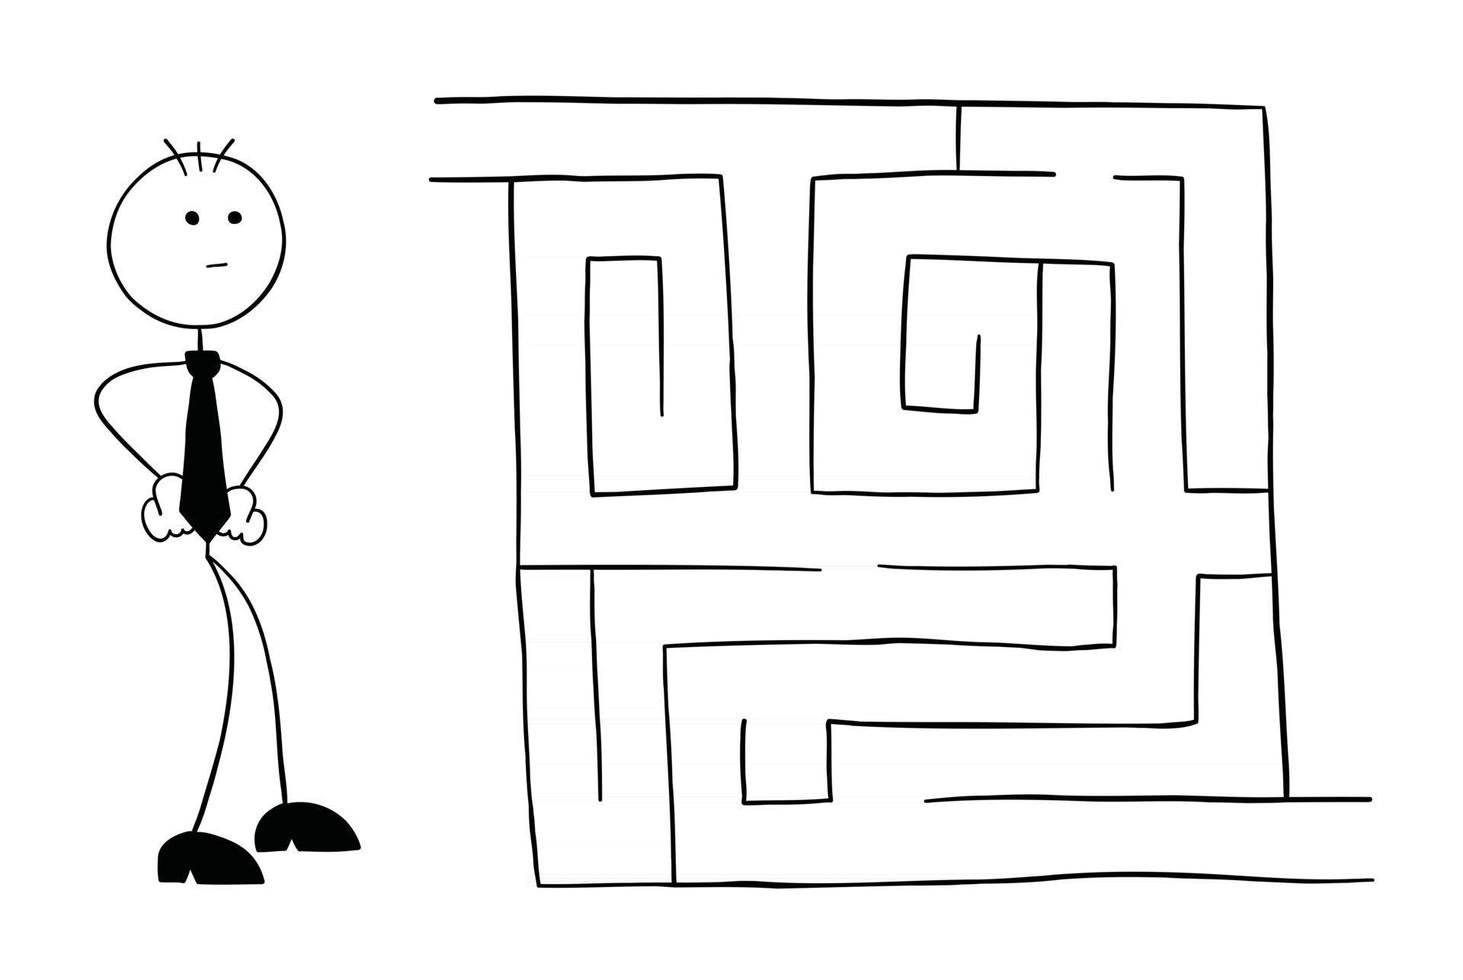 Strichmännchen-Geschäftsmann-Charakter, der in das Labyrinth schaut und Vektor-Cartoon-Illustration denkt vektor